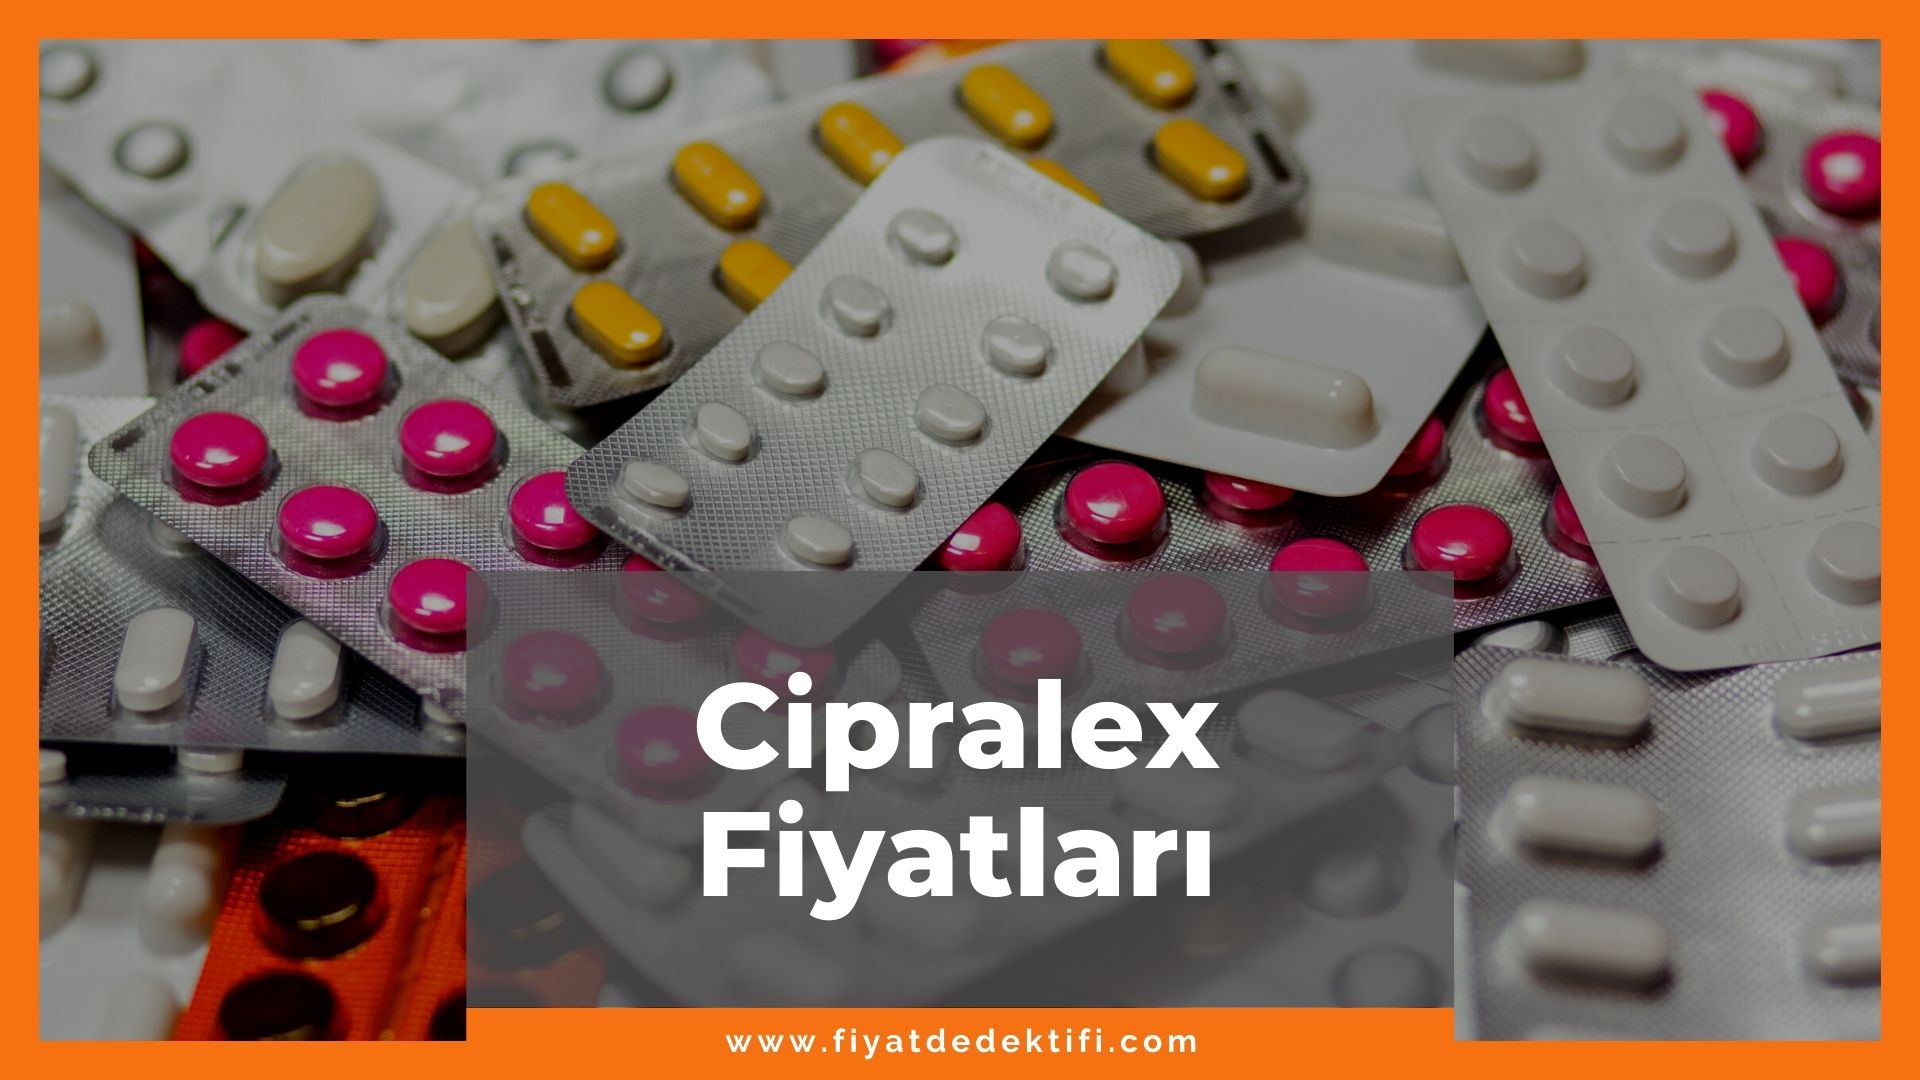 Cipralex Fiyat 2021, Cipralex Fiyatı, Cipralex Antidepresan Fiyatı, cipralex zamlandı mı, cipralex zamlı fiyat ne kadar oldu